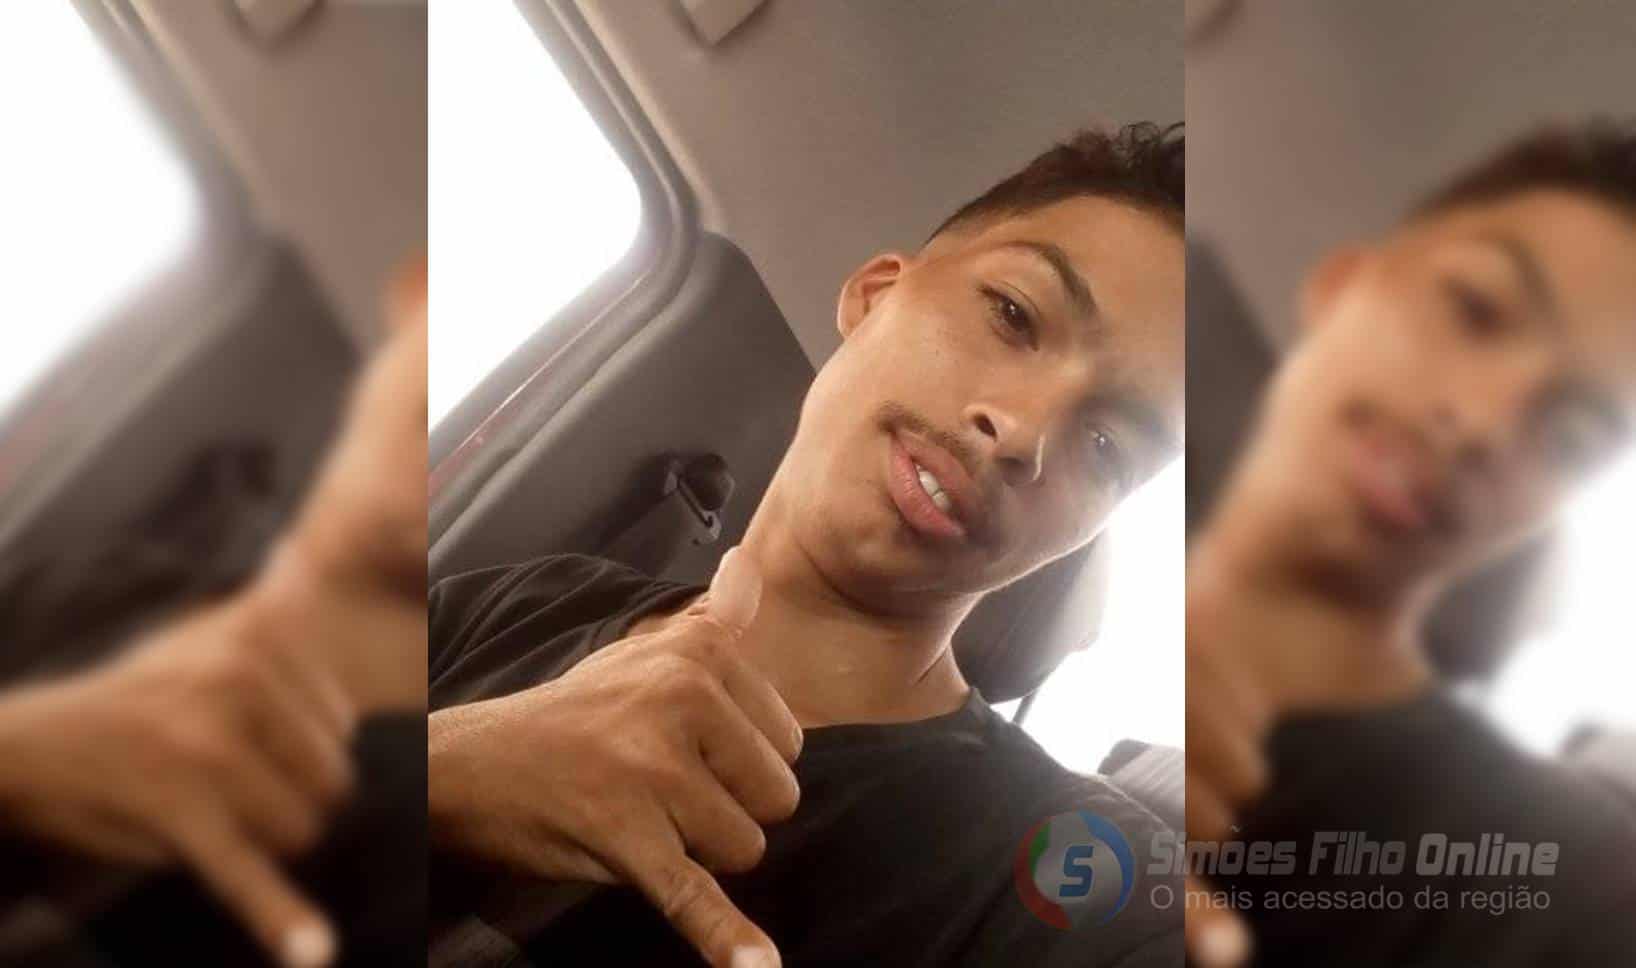 Jovem de 23 anos morre apos brutal espancamento em Simões Filho, na BA